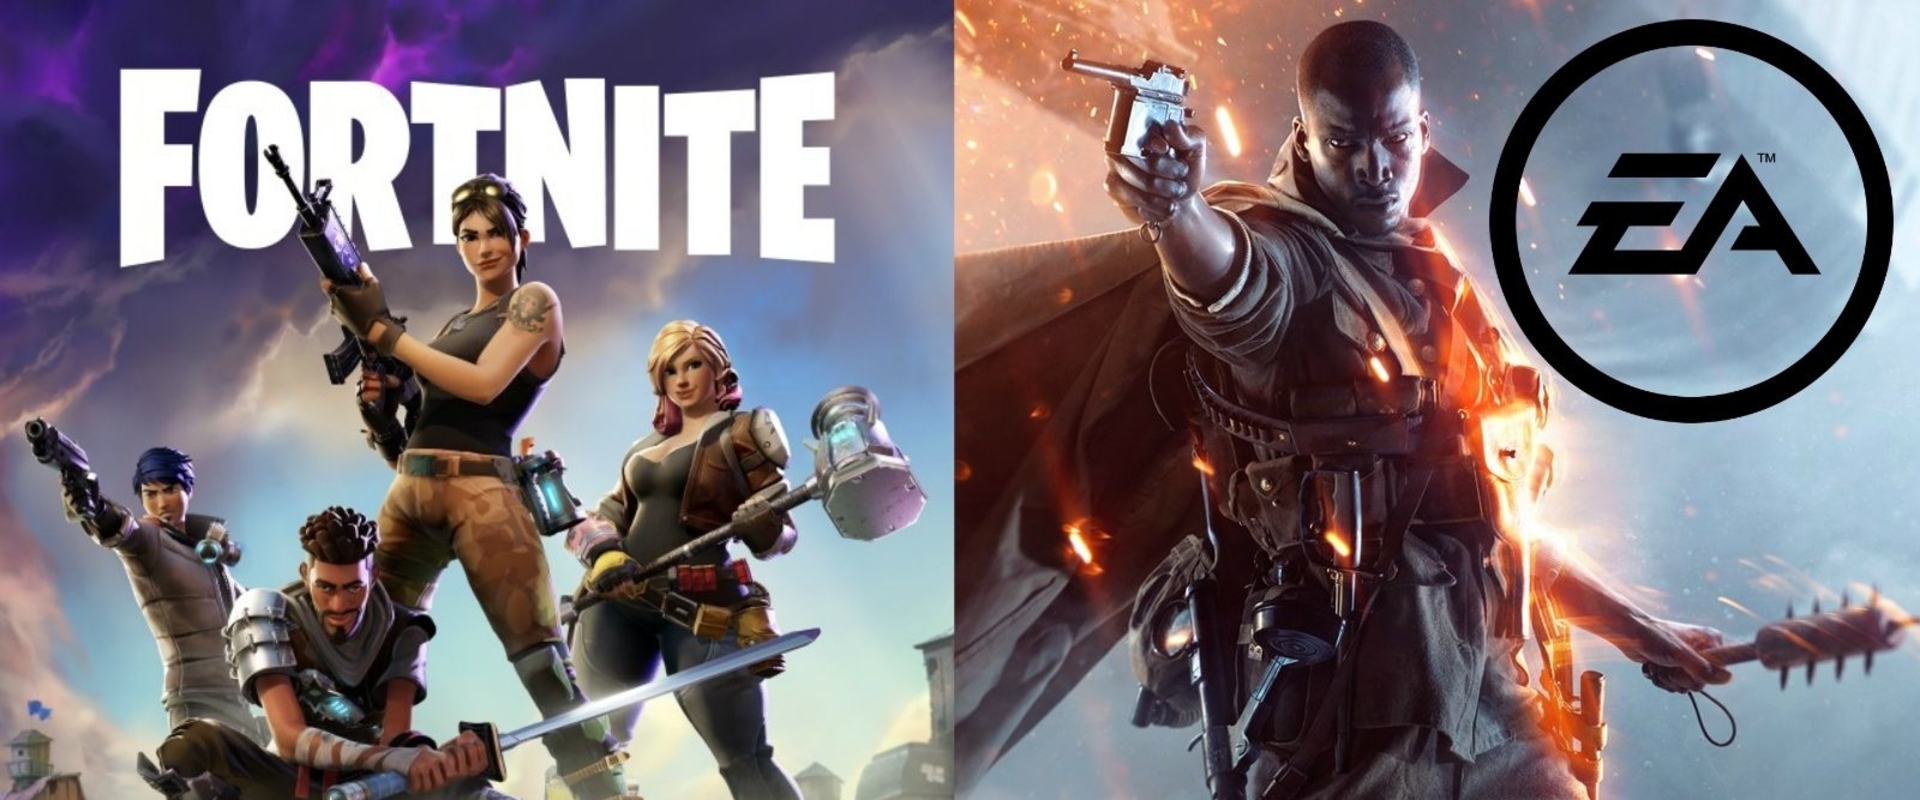 A Fortnite a világ legsikeresebb játéka, de ez nem zavarja meg az EA-t vagy az Activisiont